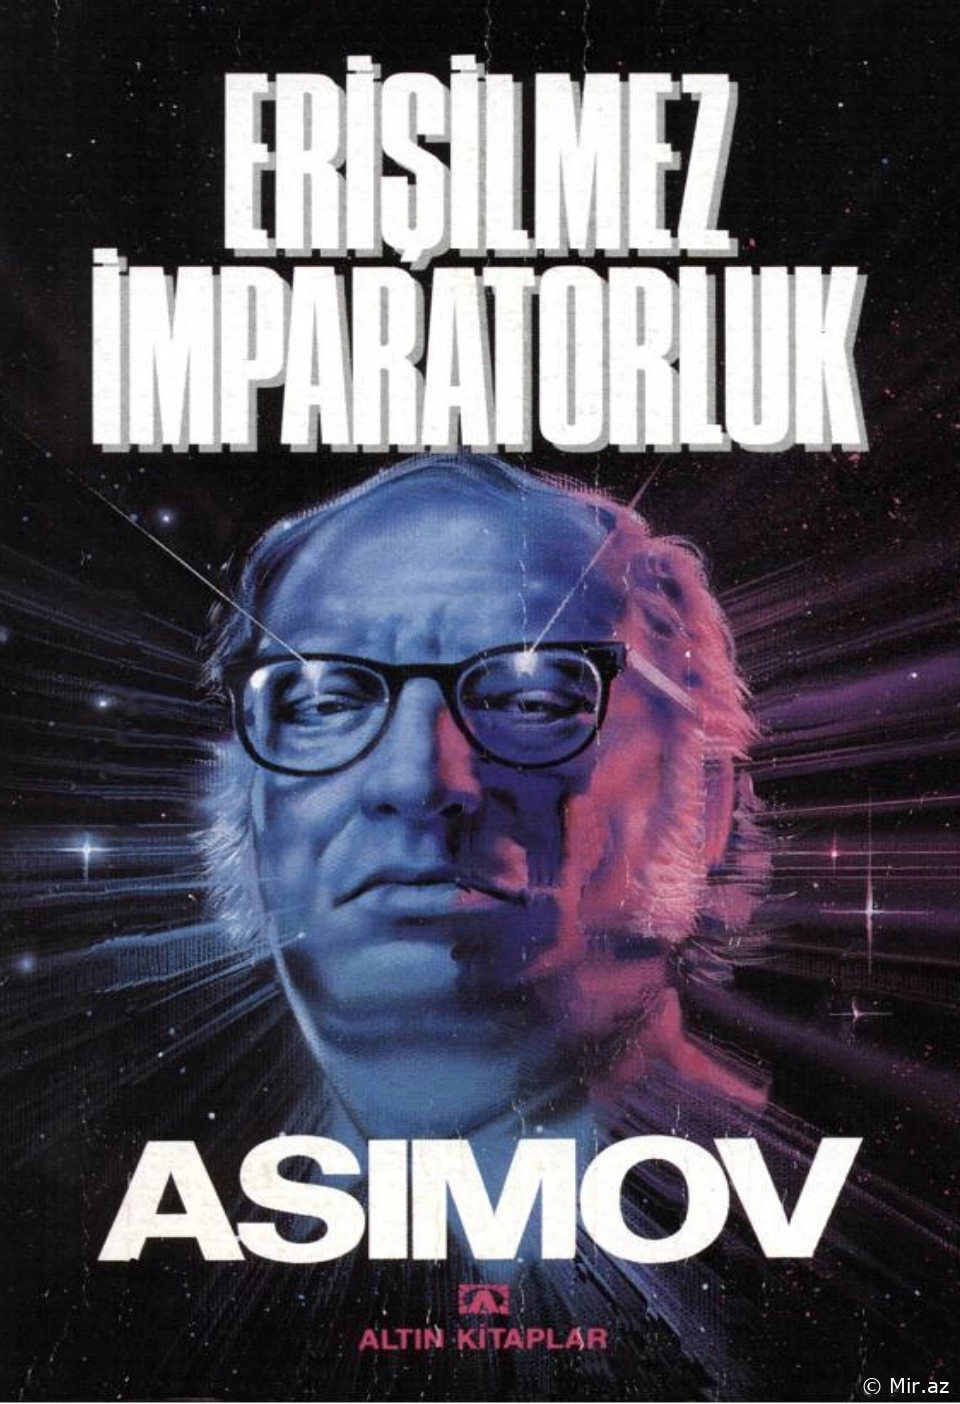 Isaac Asimov "Vakıf İleri (Erişilemez İmparatorluk)" PDF